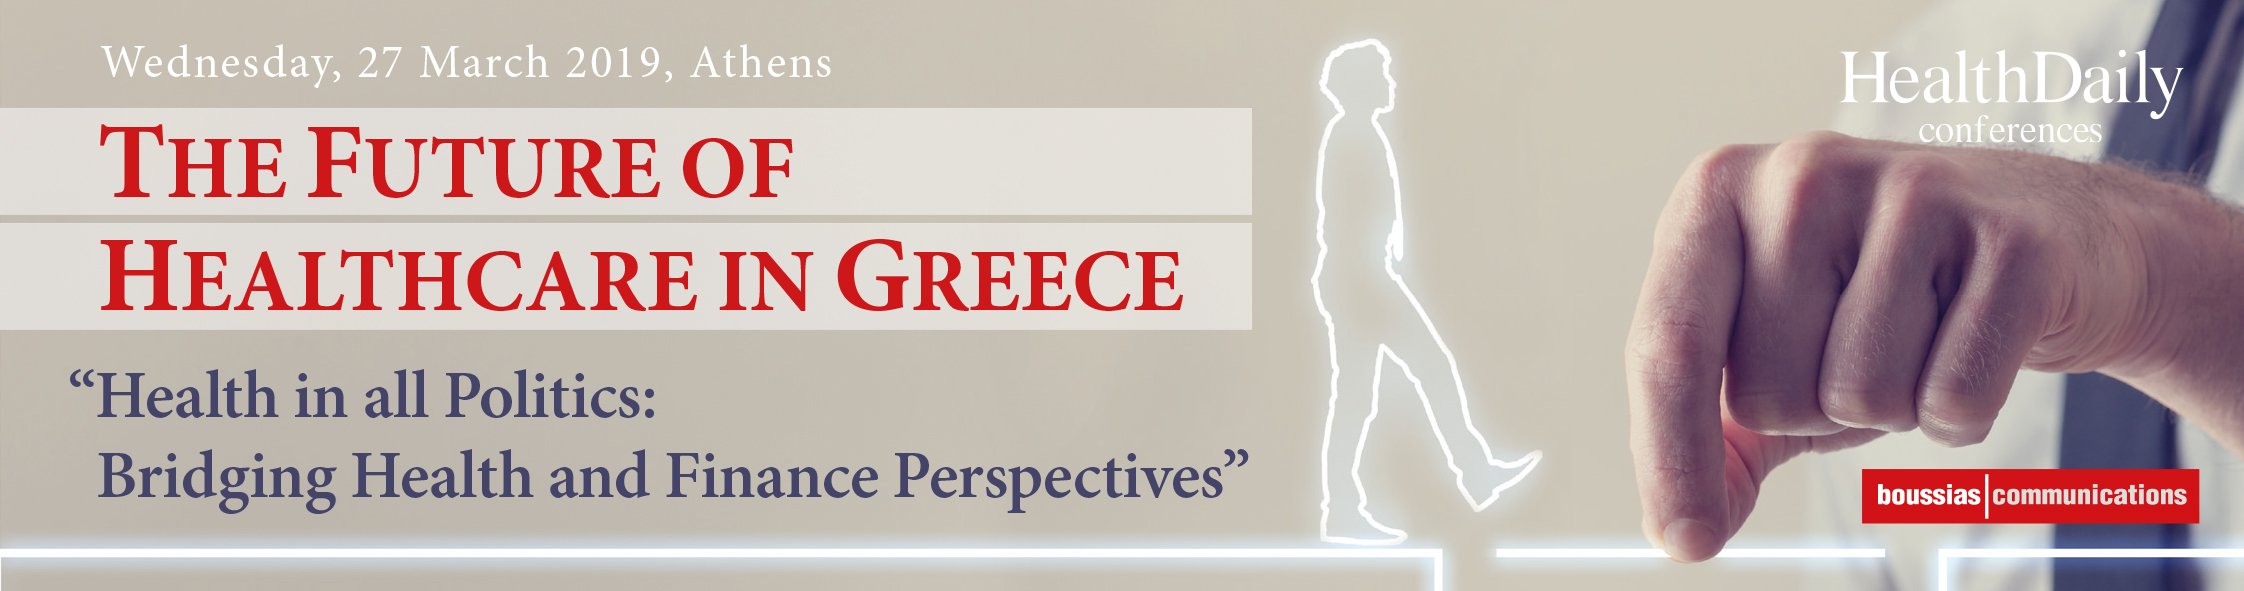 9ο Συνέδριο “The Future of Healthcare in Greece” : Γεφυρώνοντας τις προοπτικές υγείας και χρηματοδότησης στις πολιτικές της Ε.Ε.